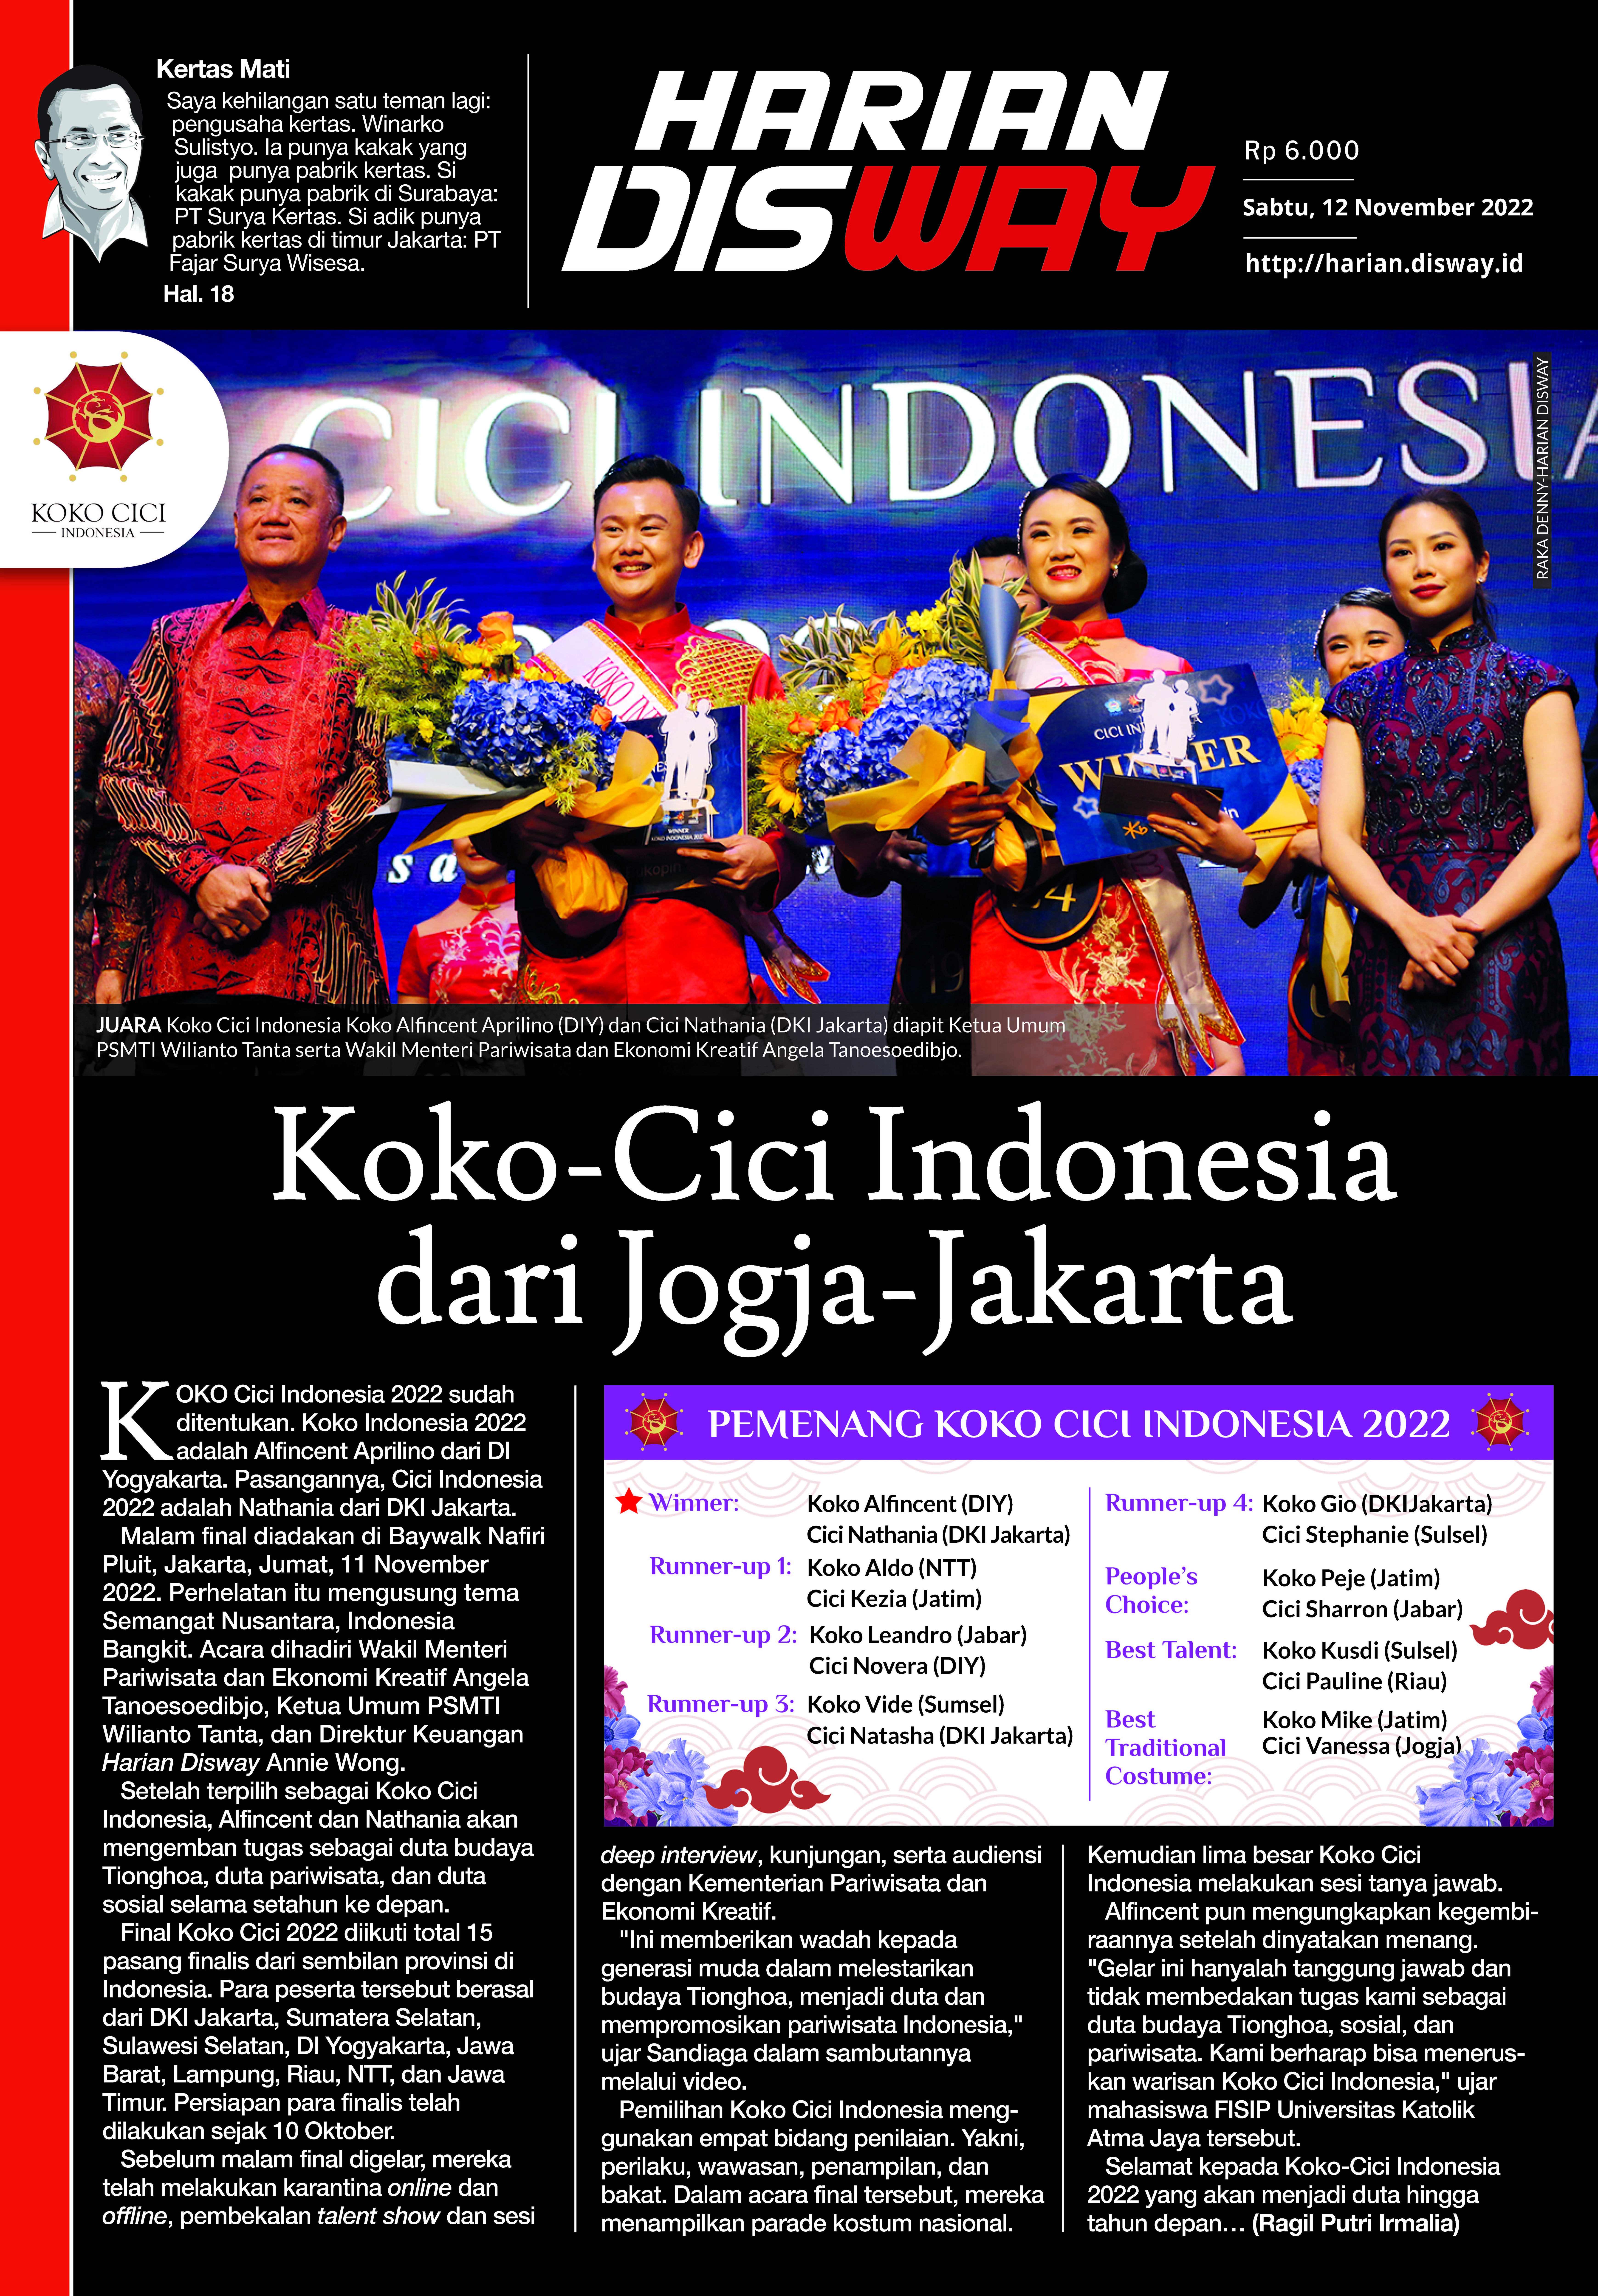 Koko-Cici Indonesia dari Jogja-Jakarta